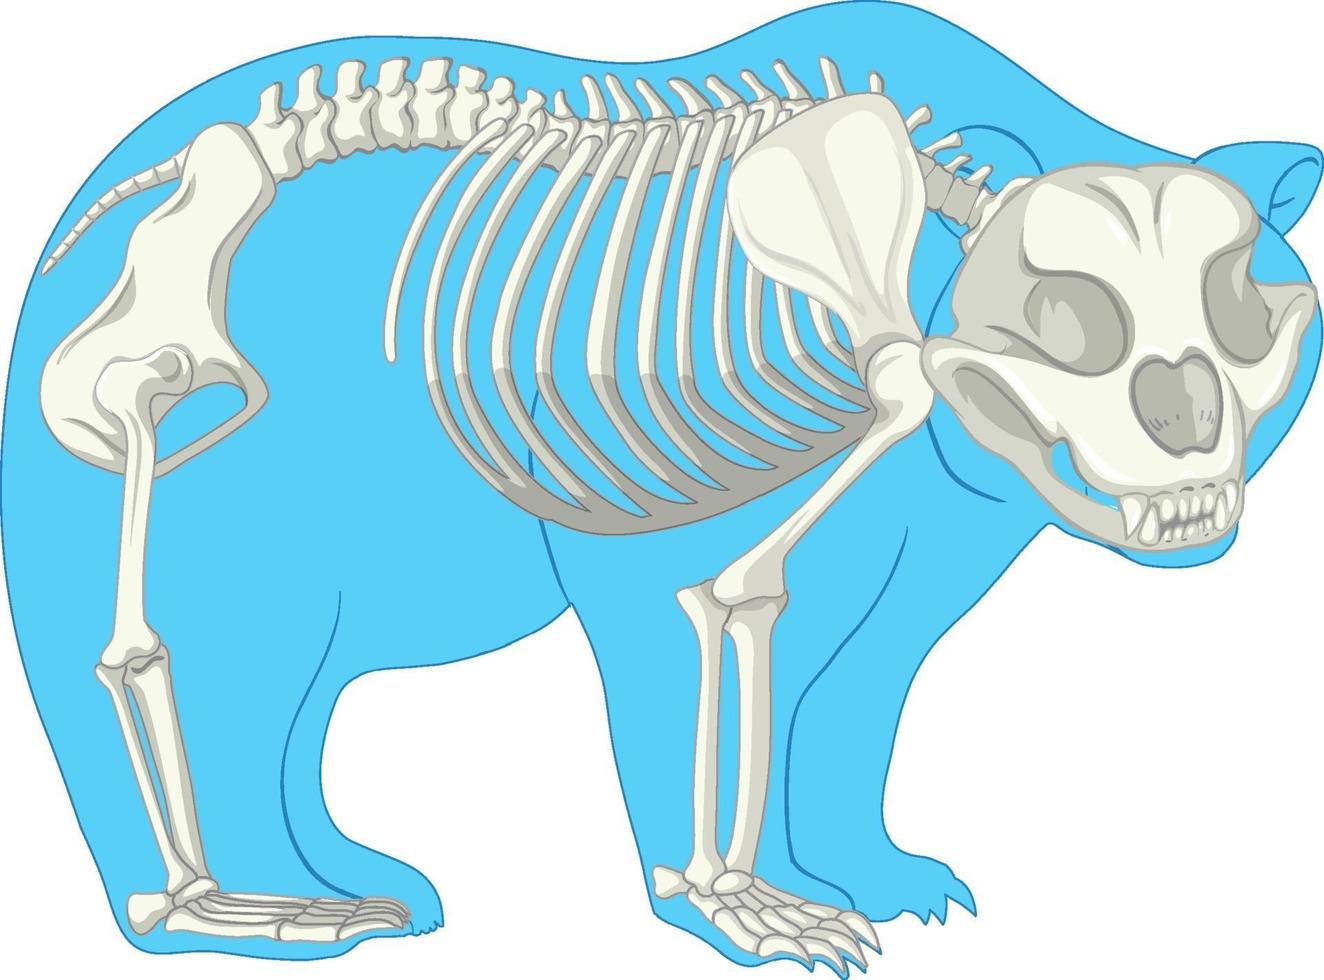 esqueleto anatomia de urso selvagem isolado vetor